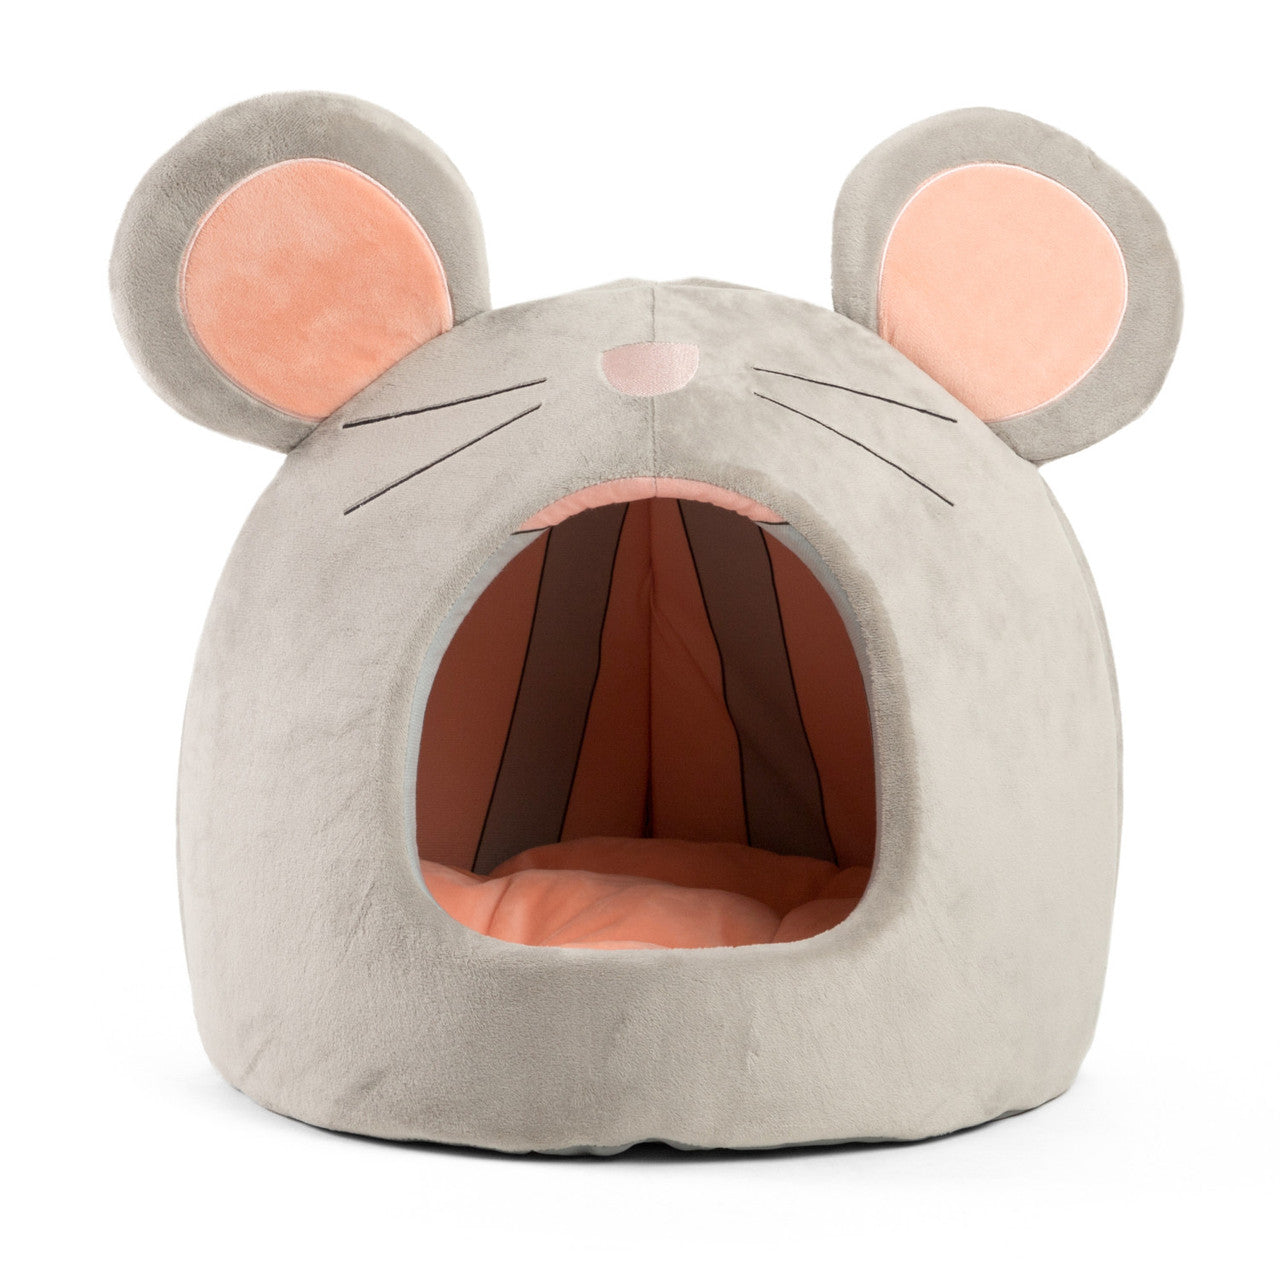 Mouse Hut Pet Bed